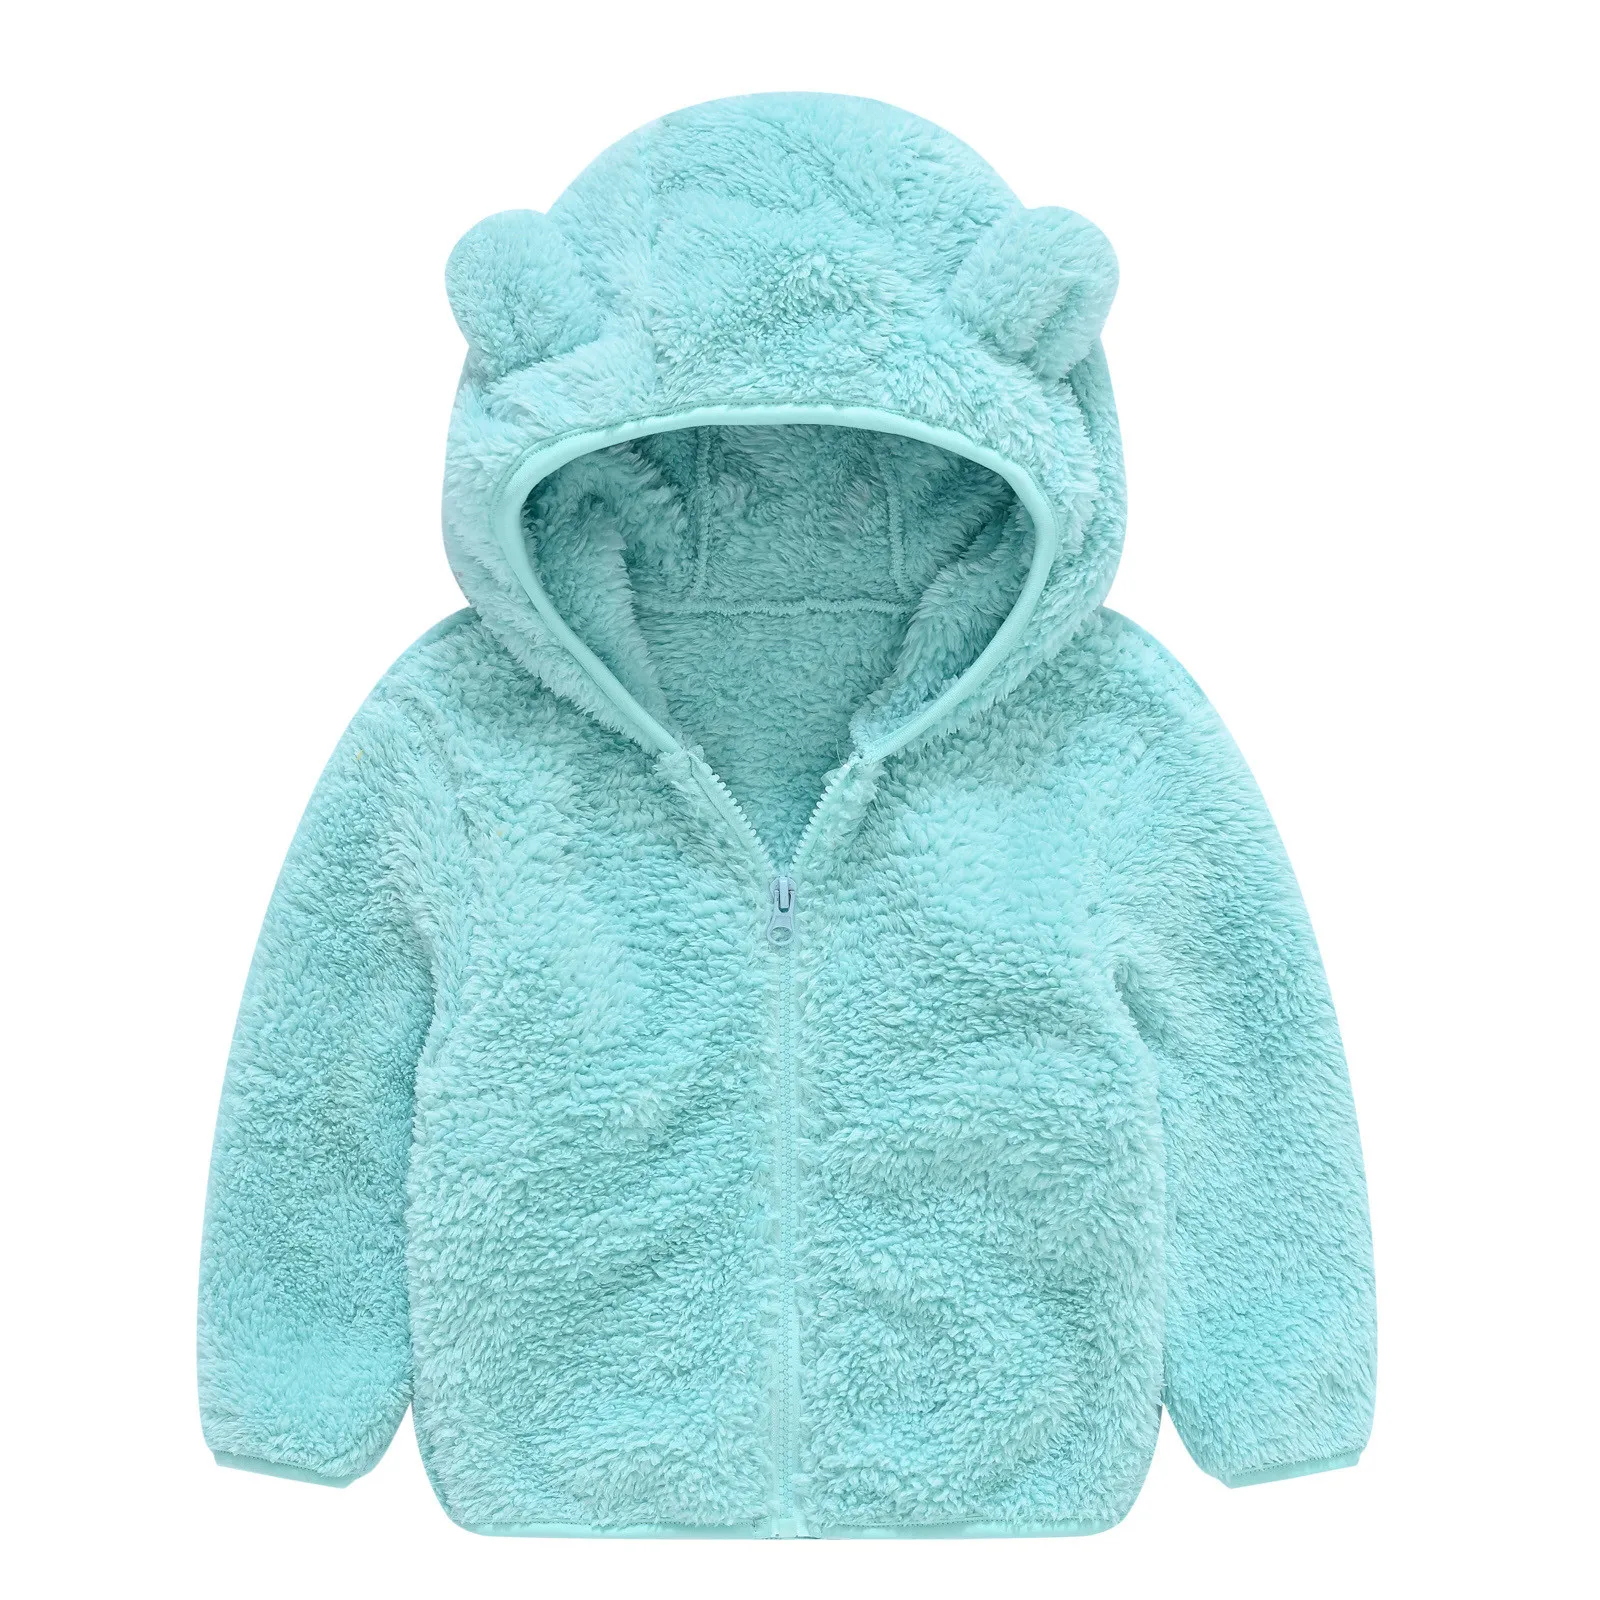 Kids Girls Boys Fleece Teddy Bear Winter Hooded Coat Jacket Warm Thick Outwear 